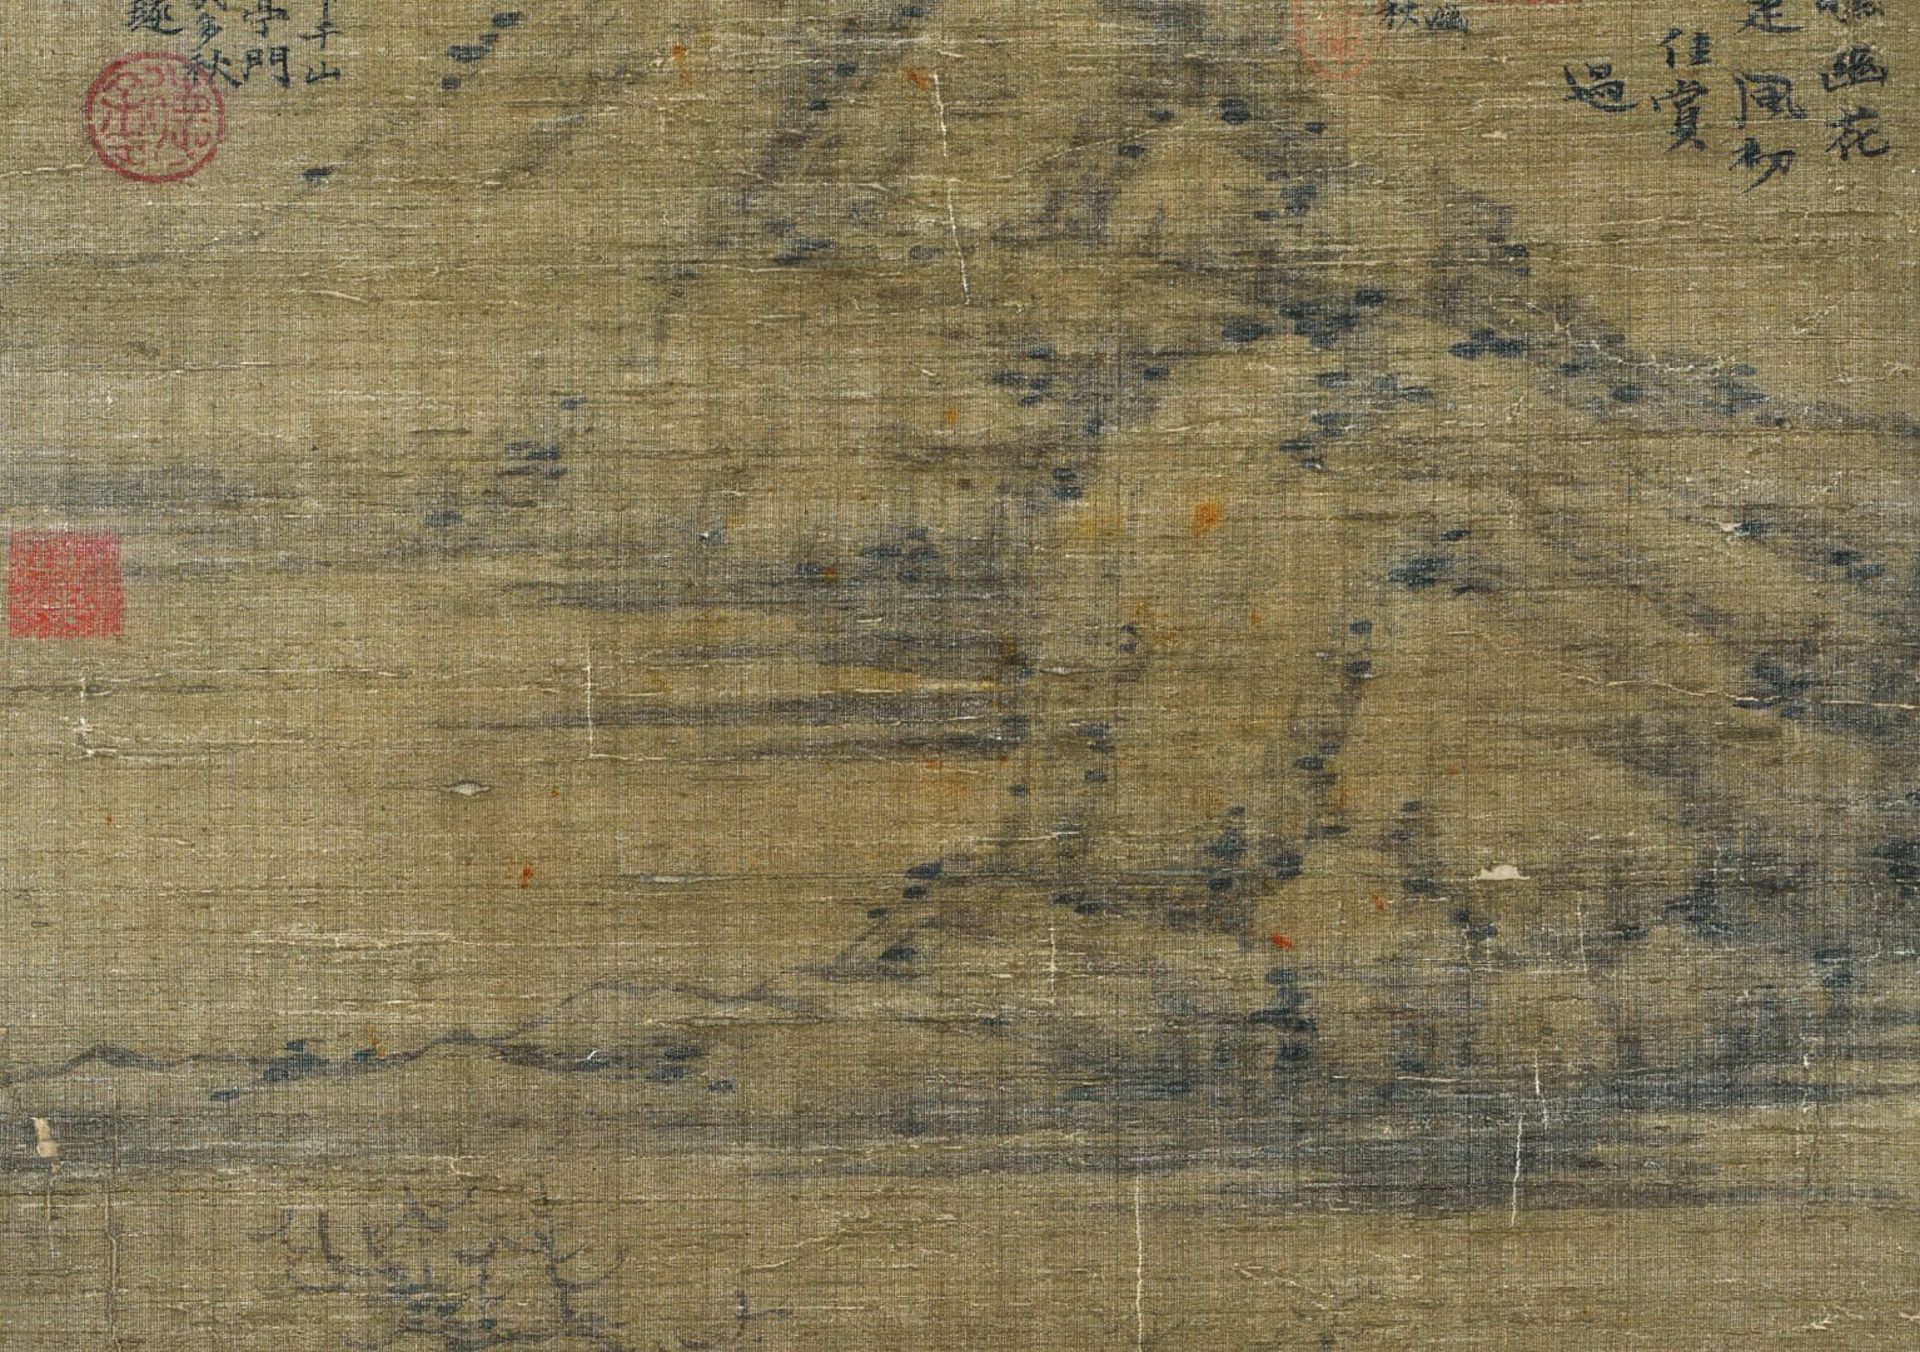 A Chinese Scroll Painting By Ni Zan - Bild 3 aus 13